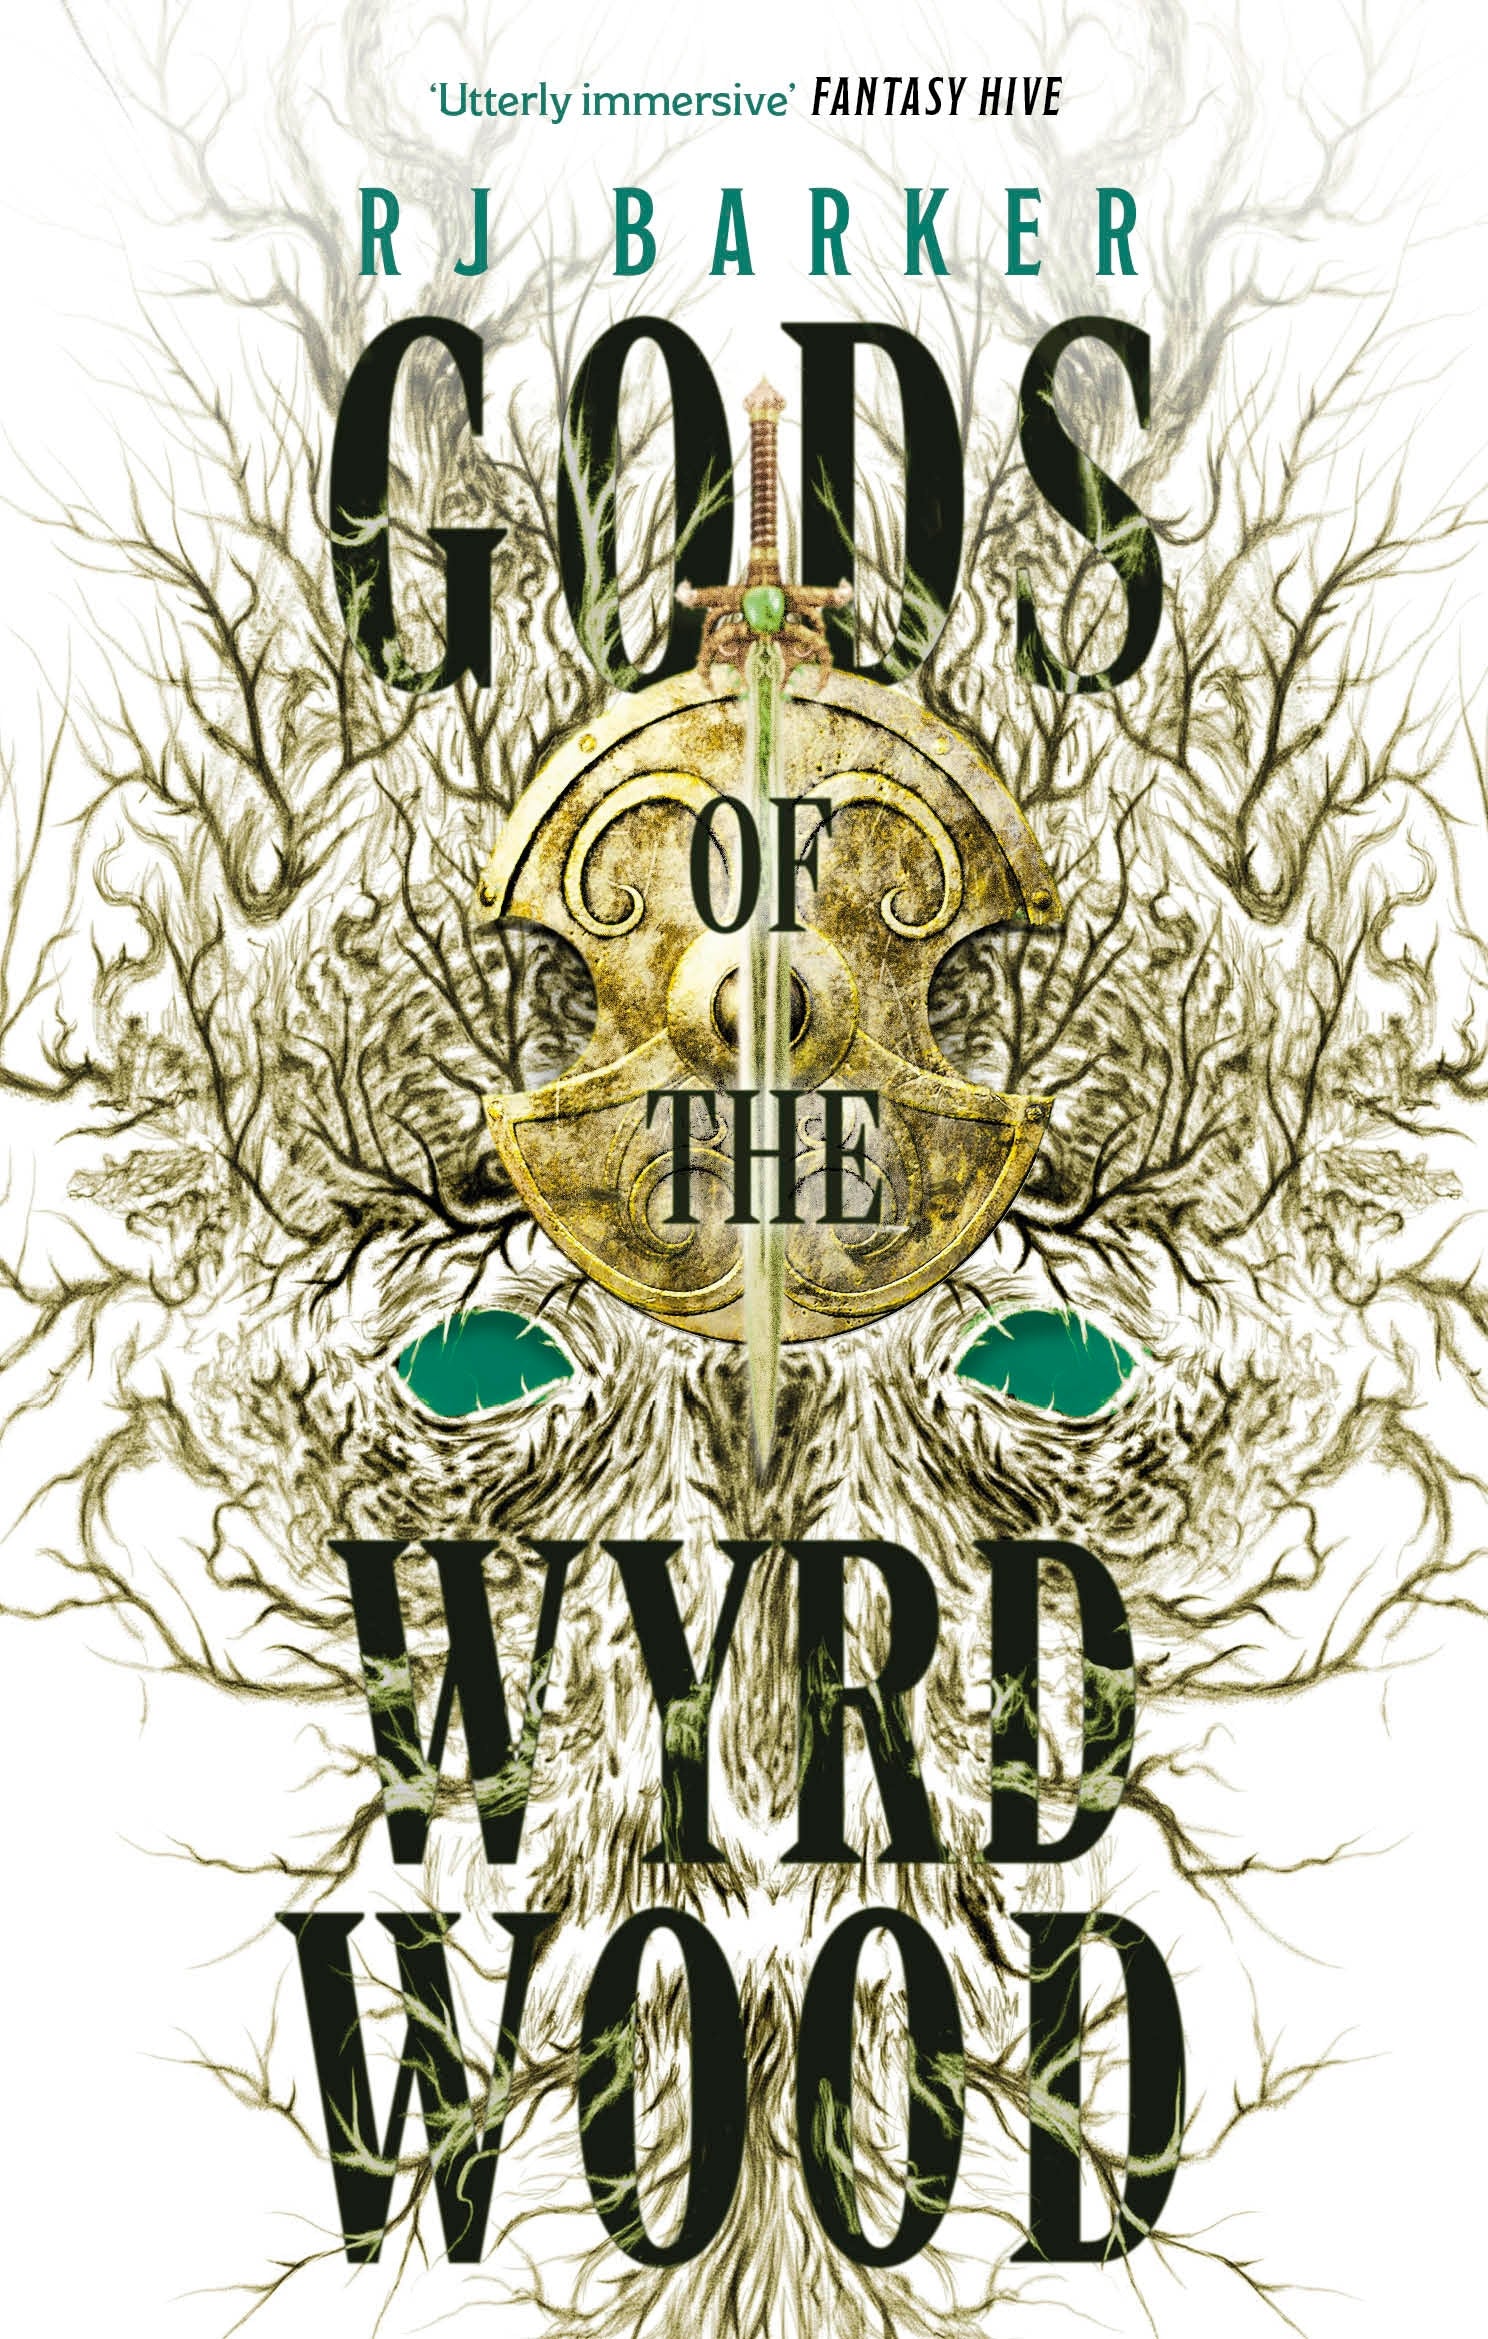 Gods of the Wyrdwood: The Forsaken Trilogy, Book 1 by RJ Barker